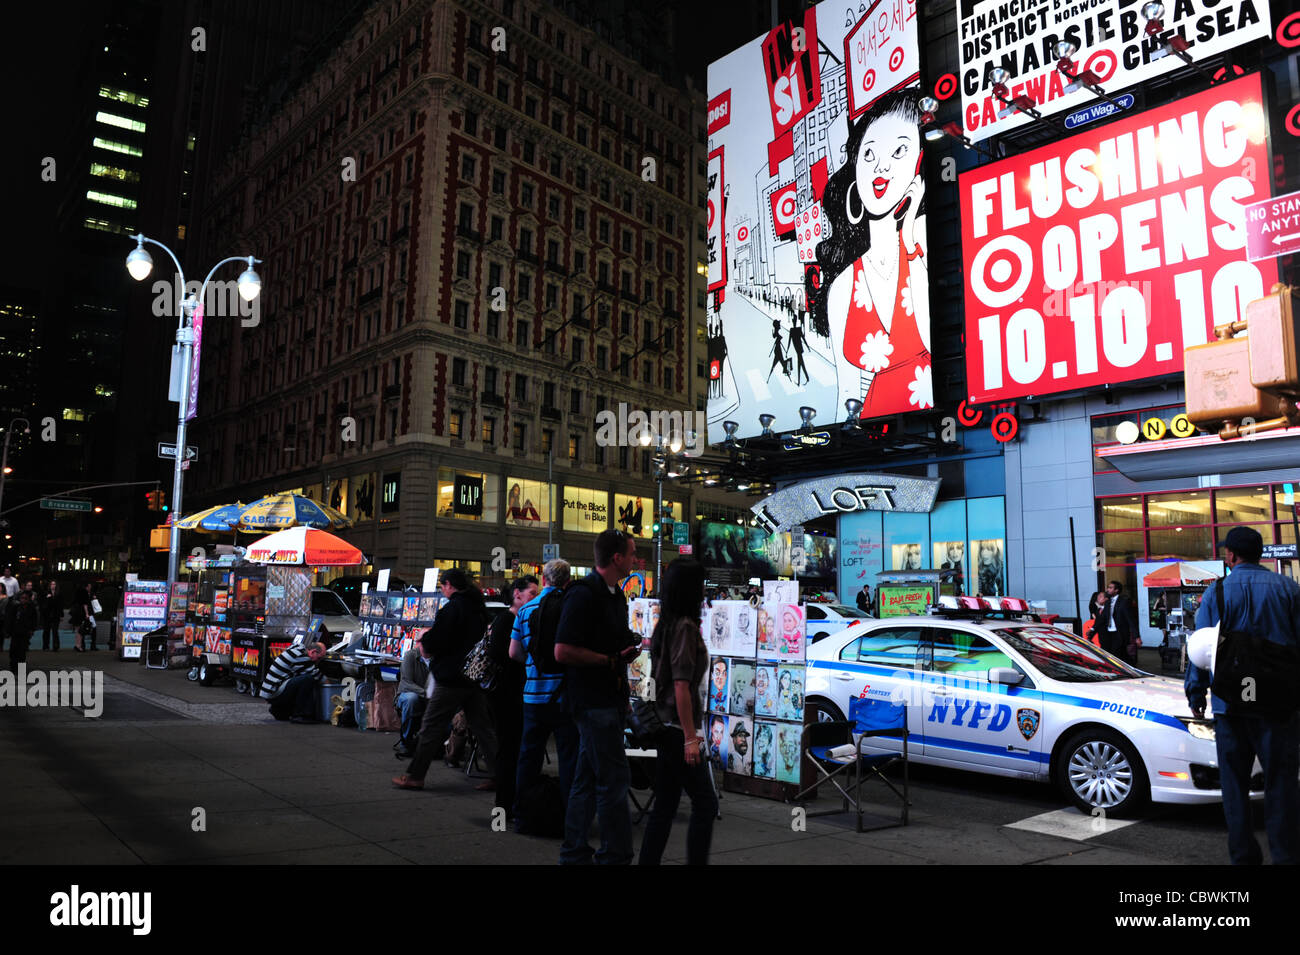 Nacht Neon erschossen, Billboards, Gebäude, Menschen, NYPD Auto geparkt Bürgersteig Kunst stand, West 42nd Street am Broadway, New York Stockfoto